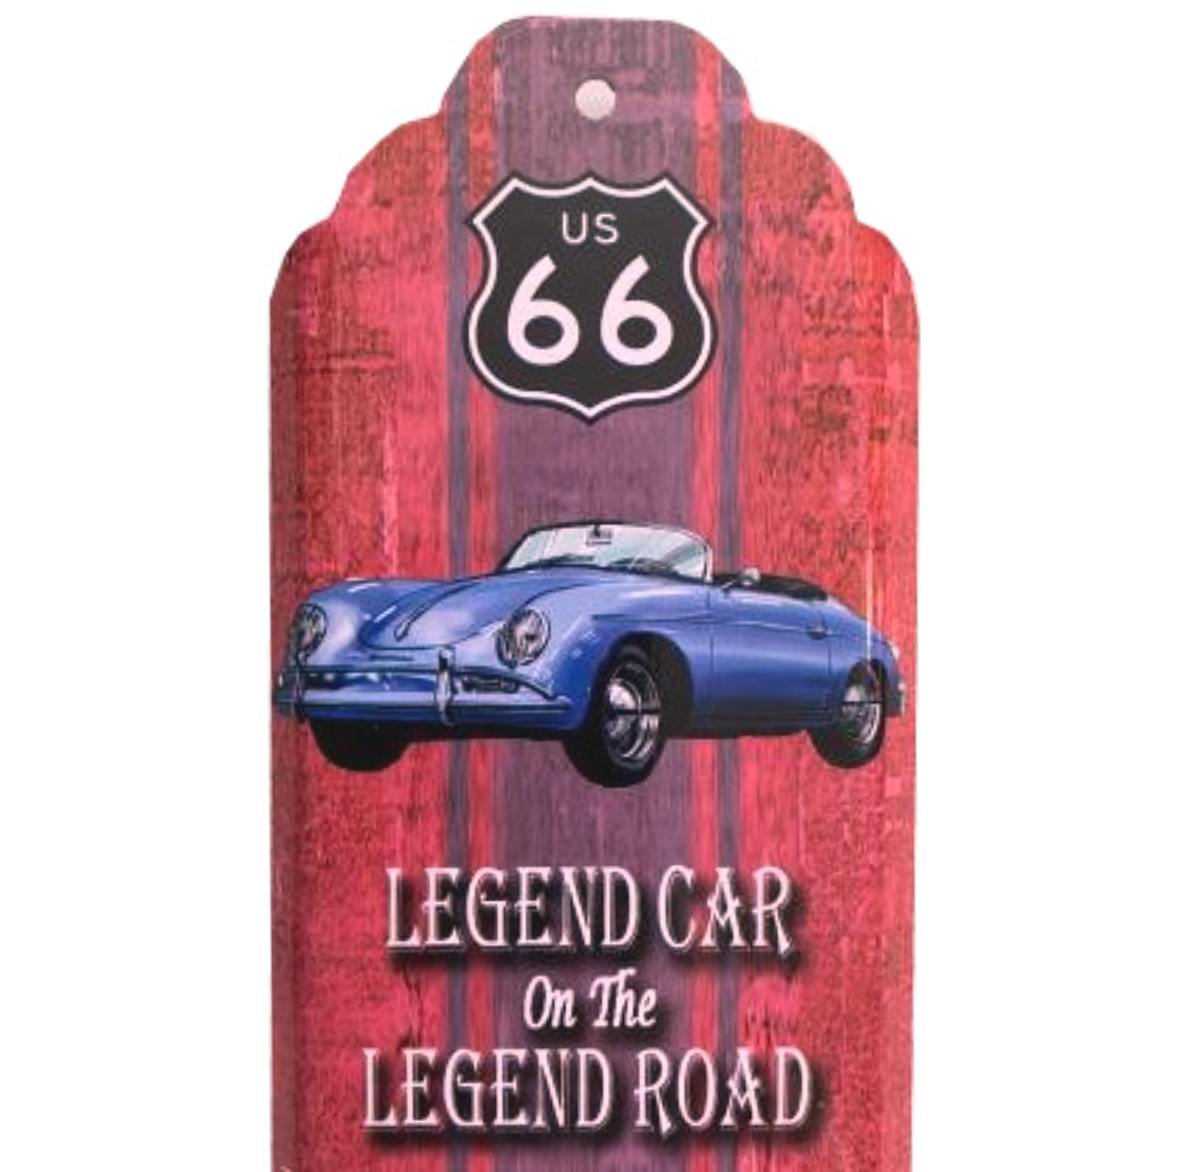 I&amp;S-6603THb-Thermometre-mural-décoration-legend-car-porsche-legend-Route-66-retro-vintage